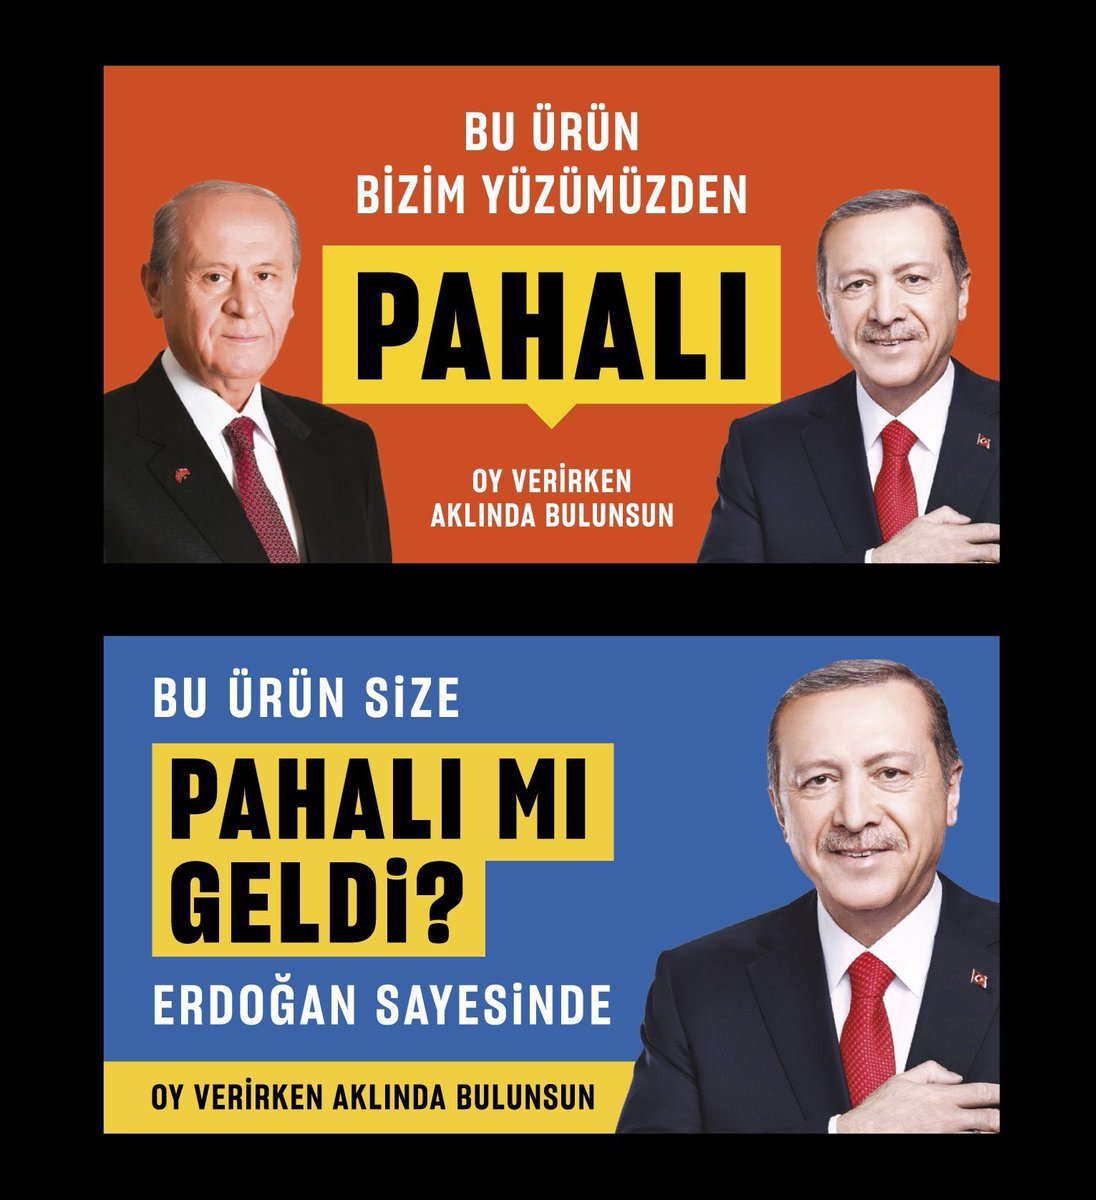 Bu şahane stickerları tasarlayan @mahirgra İzmir’de gözaltına alınmış. Aşırı tarafsız(!) yargımız yine hırsızların değil “hırsız var” diyenlerin peşinde maşallah! Gerçekleri söyleyenler değil, ülkeyi bu hale getirenler YARGILANACAK. #Son37Gün #MahirAkkoyunSerbestBırakılsın